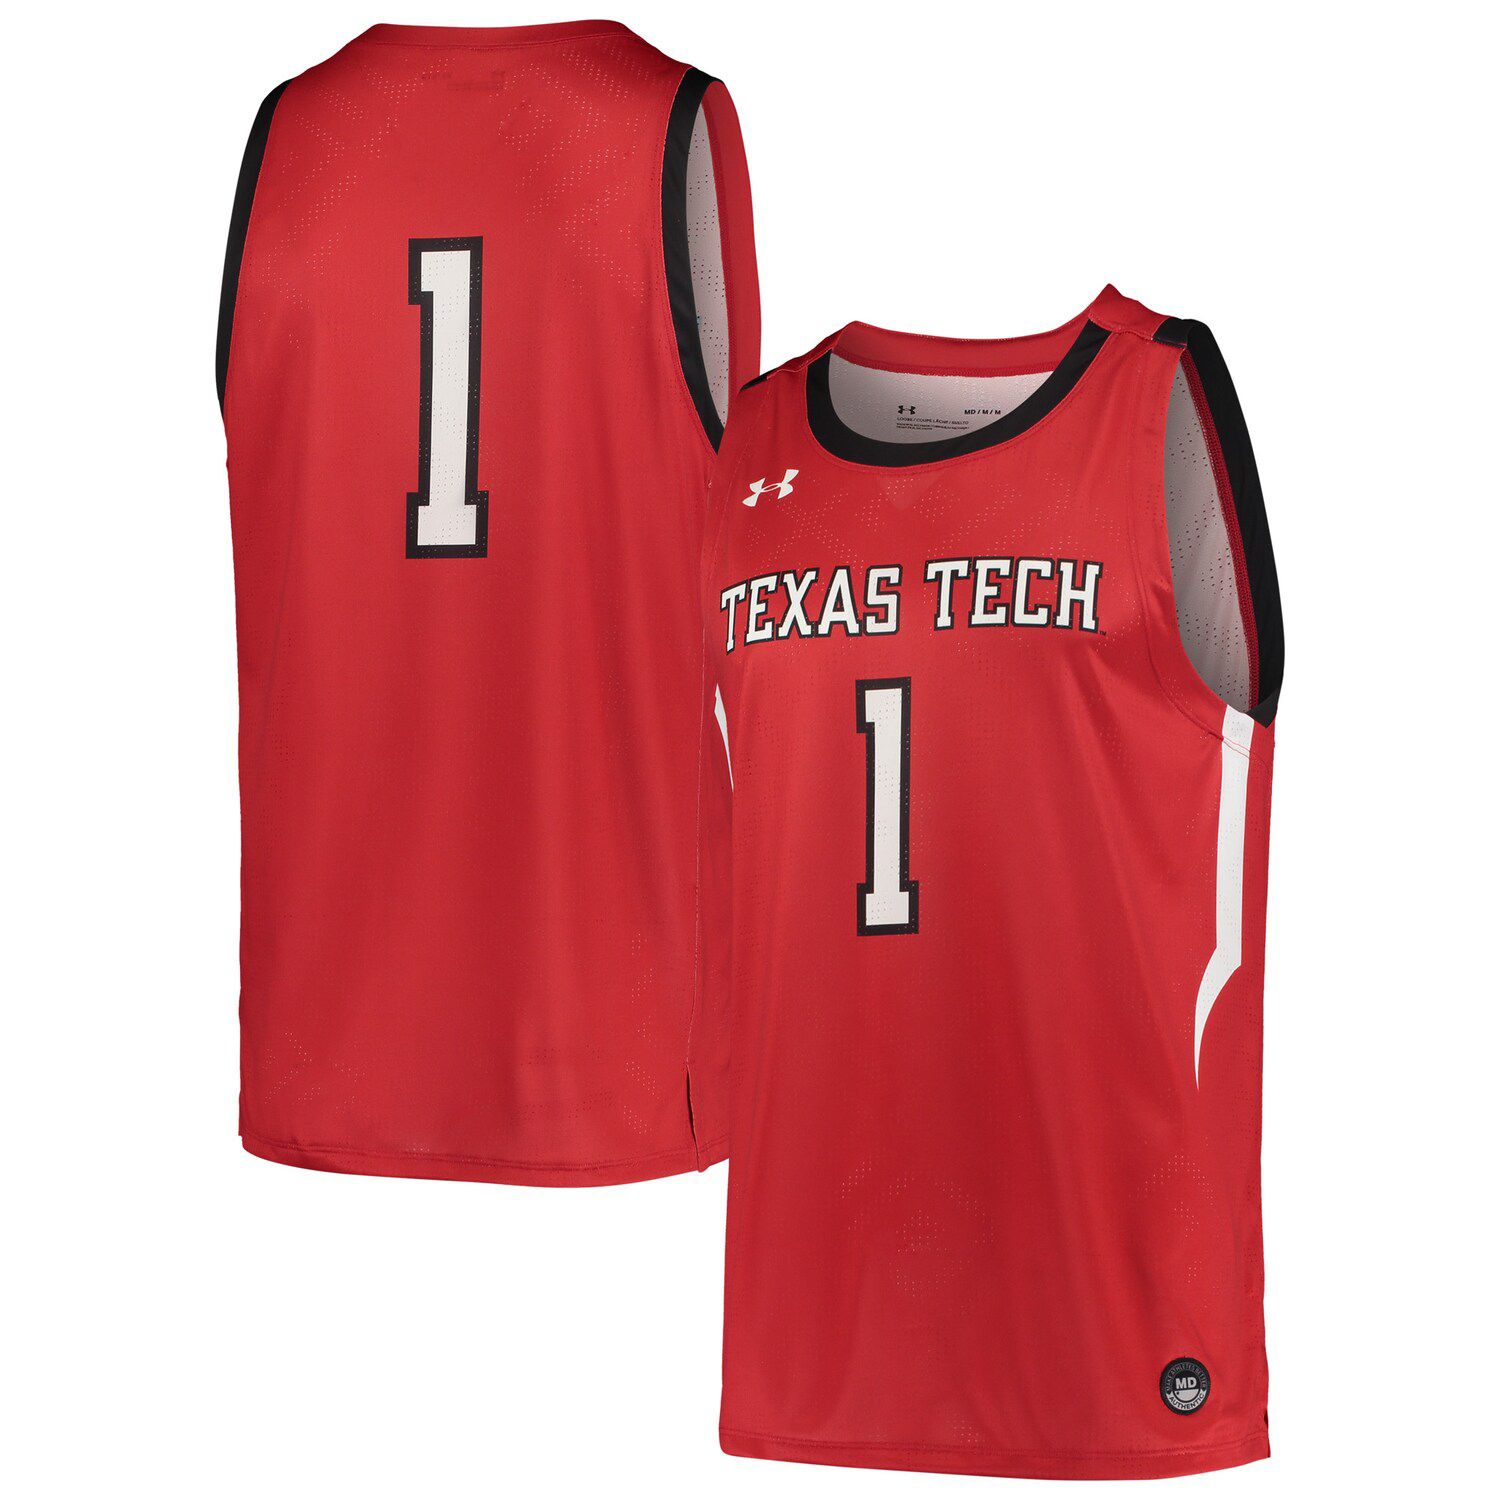 texas tech basketball jersey